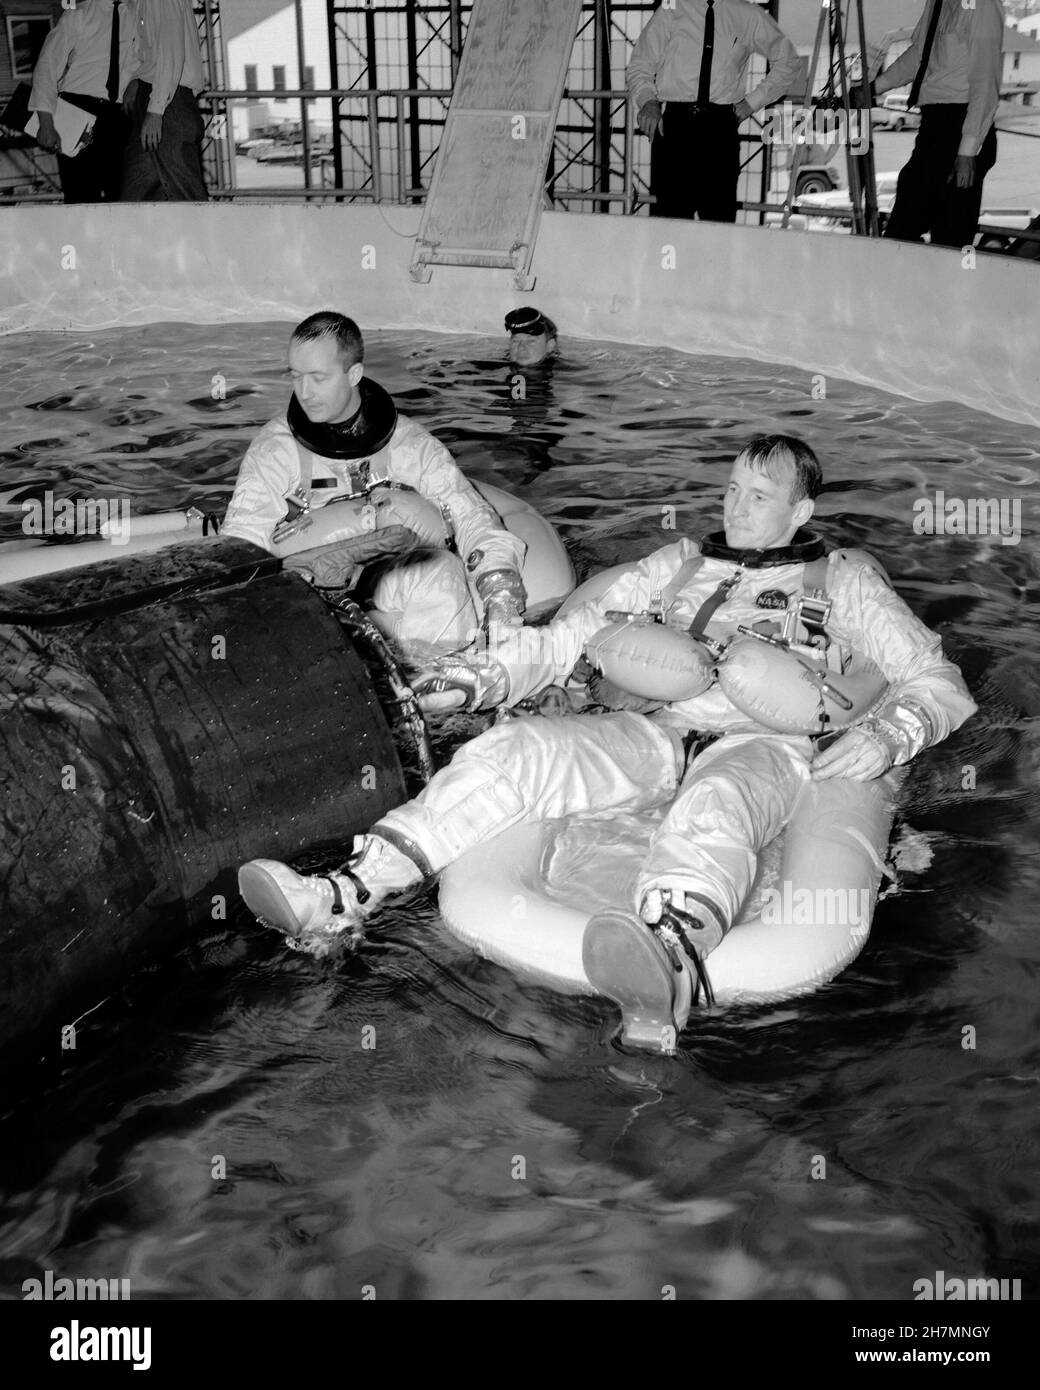 (29 mars 1965) --- l'équipage principal Gemini-Titan 4, les astronautes James A. McDivitt (à gauche), pilote de commandement, et Edward H. White II, pilote, sont photographiés pendant l'entraînement d'évacuation de l'eau à la base aérienne d'Ellington, Texas. Banque D'Images